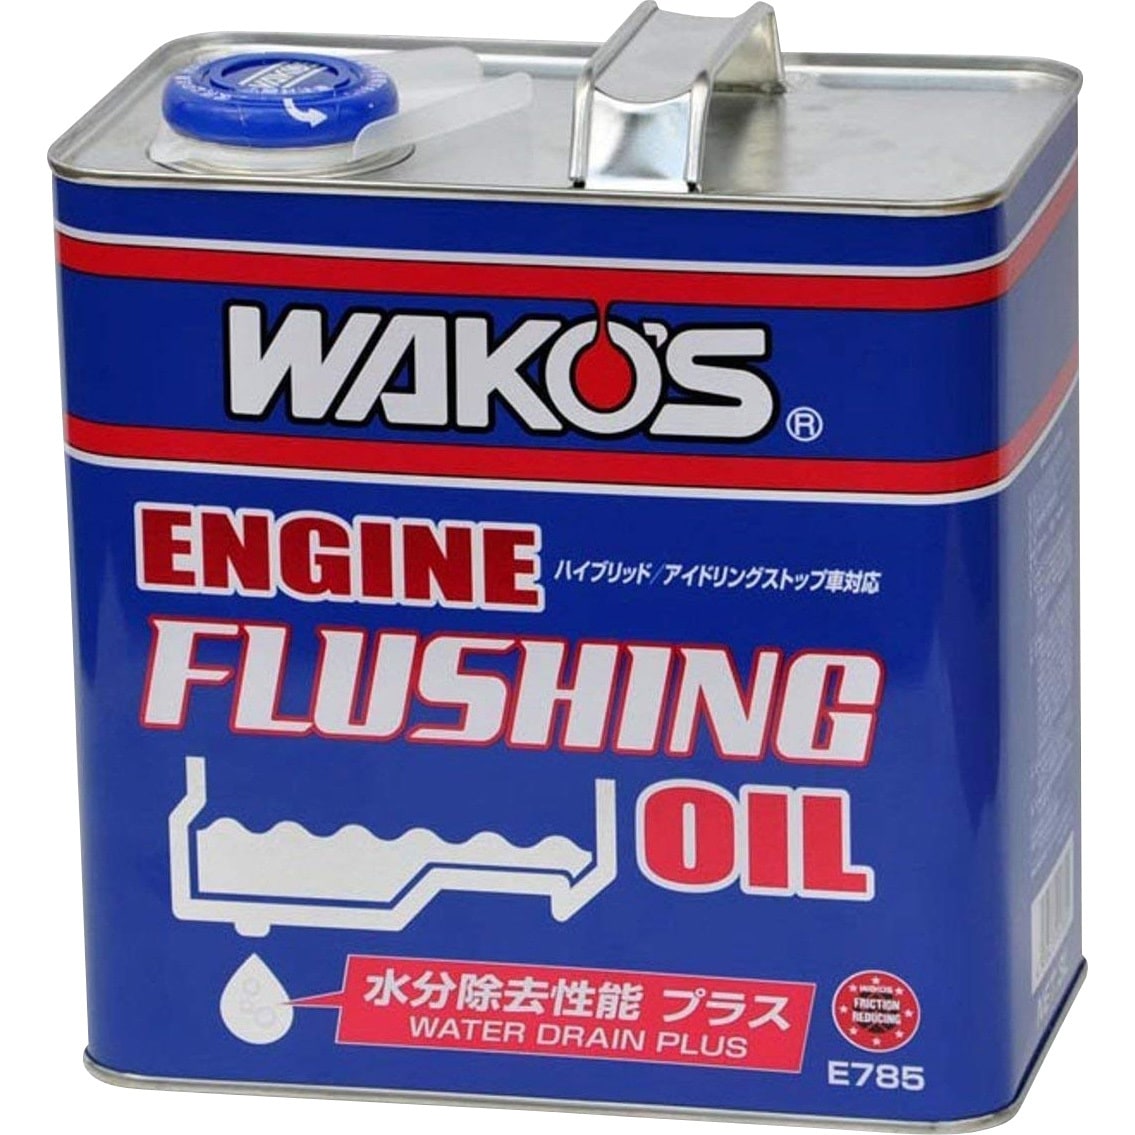 E785 エンジンフラッシングオイル EF-OIL 1本(3L) WAKO'S(ワコーズ 